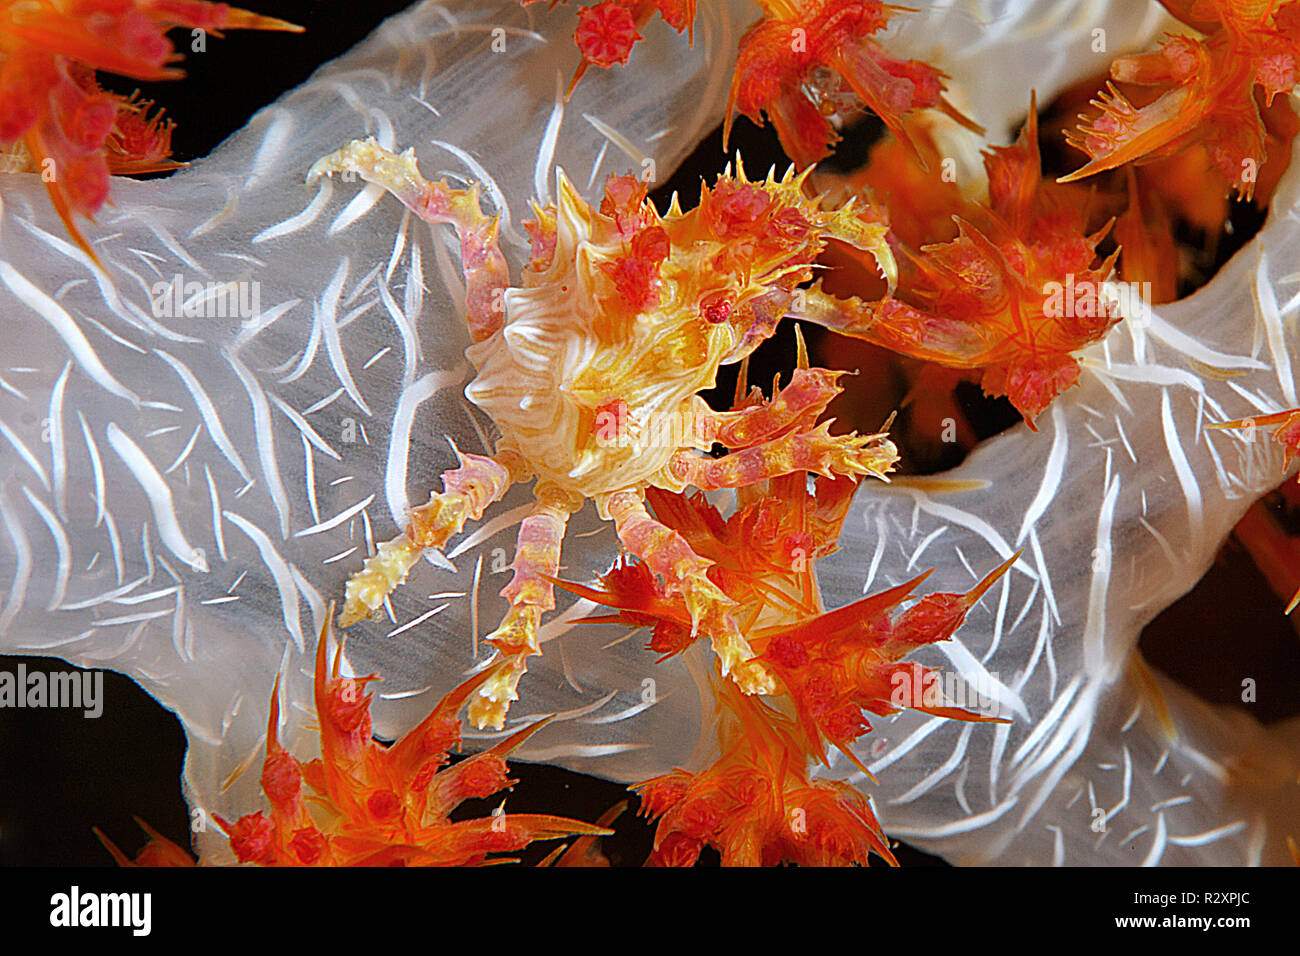 Crabe corail mou ou crabe Hoplophrys oatesii (bonbons) vivant dans les coraux mous (Alcyonacea), île de Wakatobi, Sulawesi, Indonésie Banque D'Images